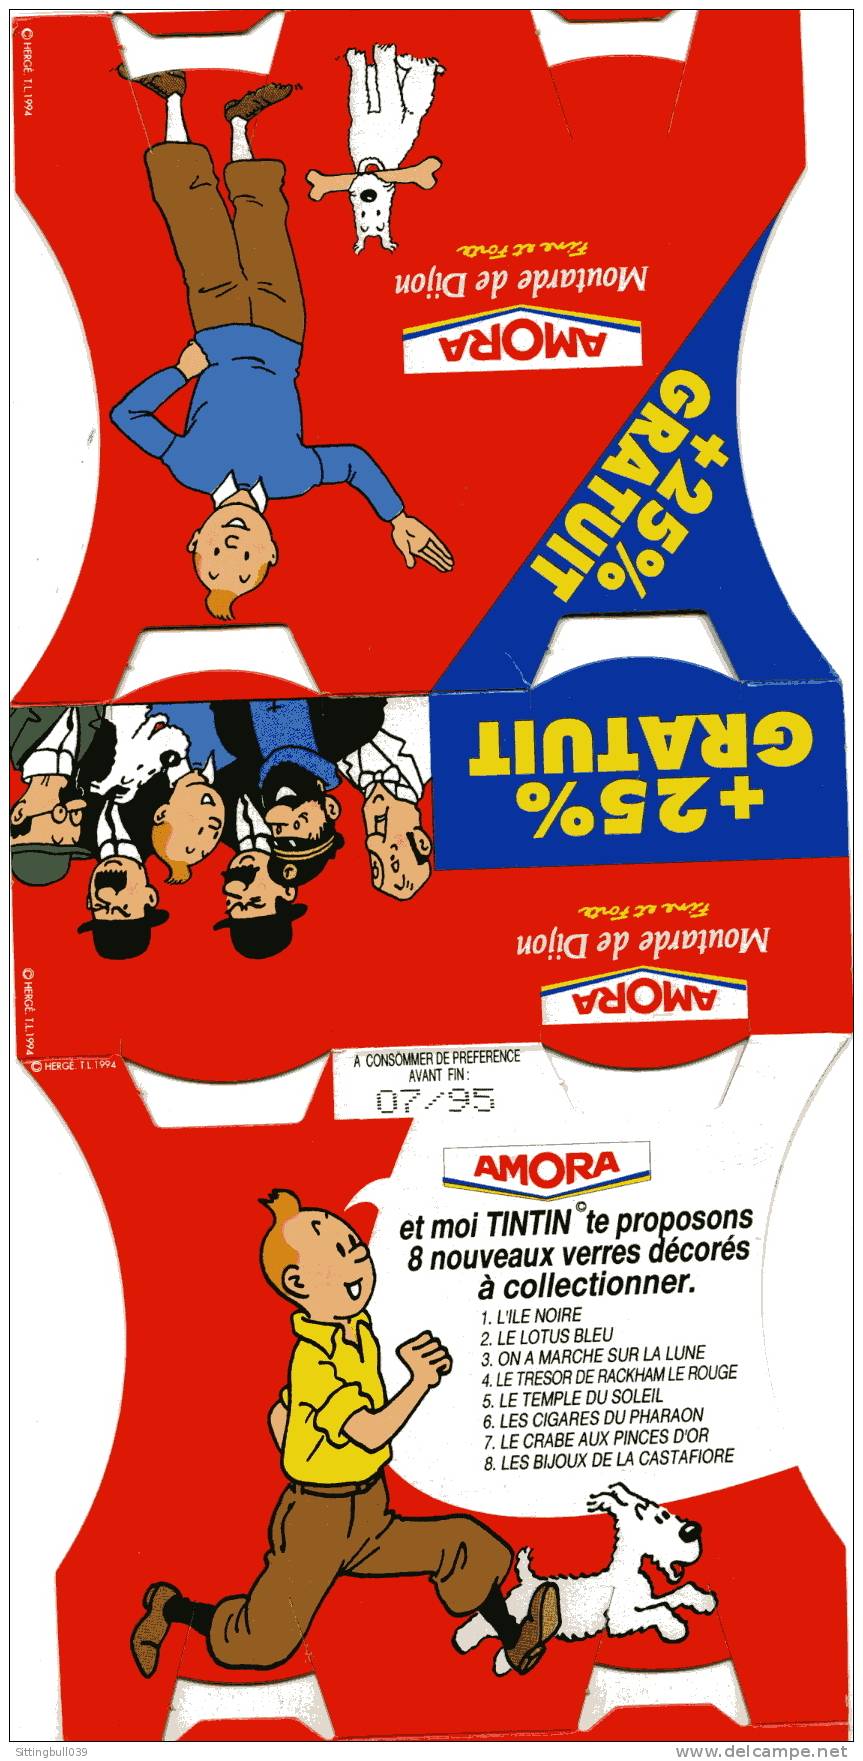 TINTIN. PUBLICITE AMORA. LA MOUTARDE QUI RELEVE LE PLAT. Hergé 1994 - Advertisement